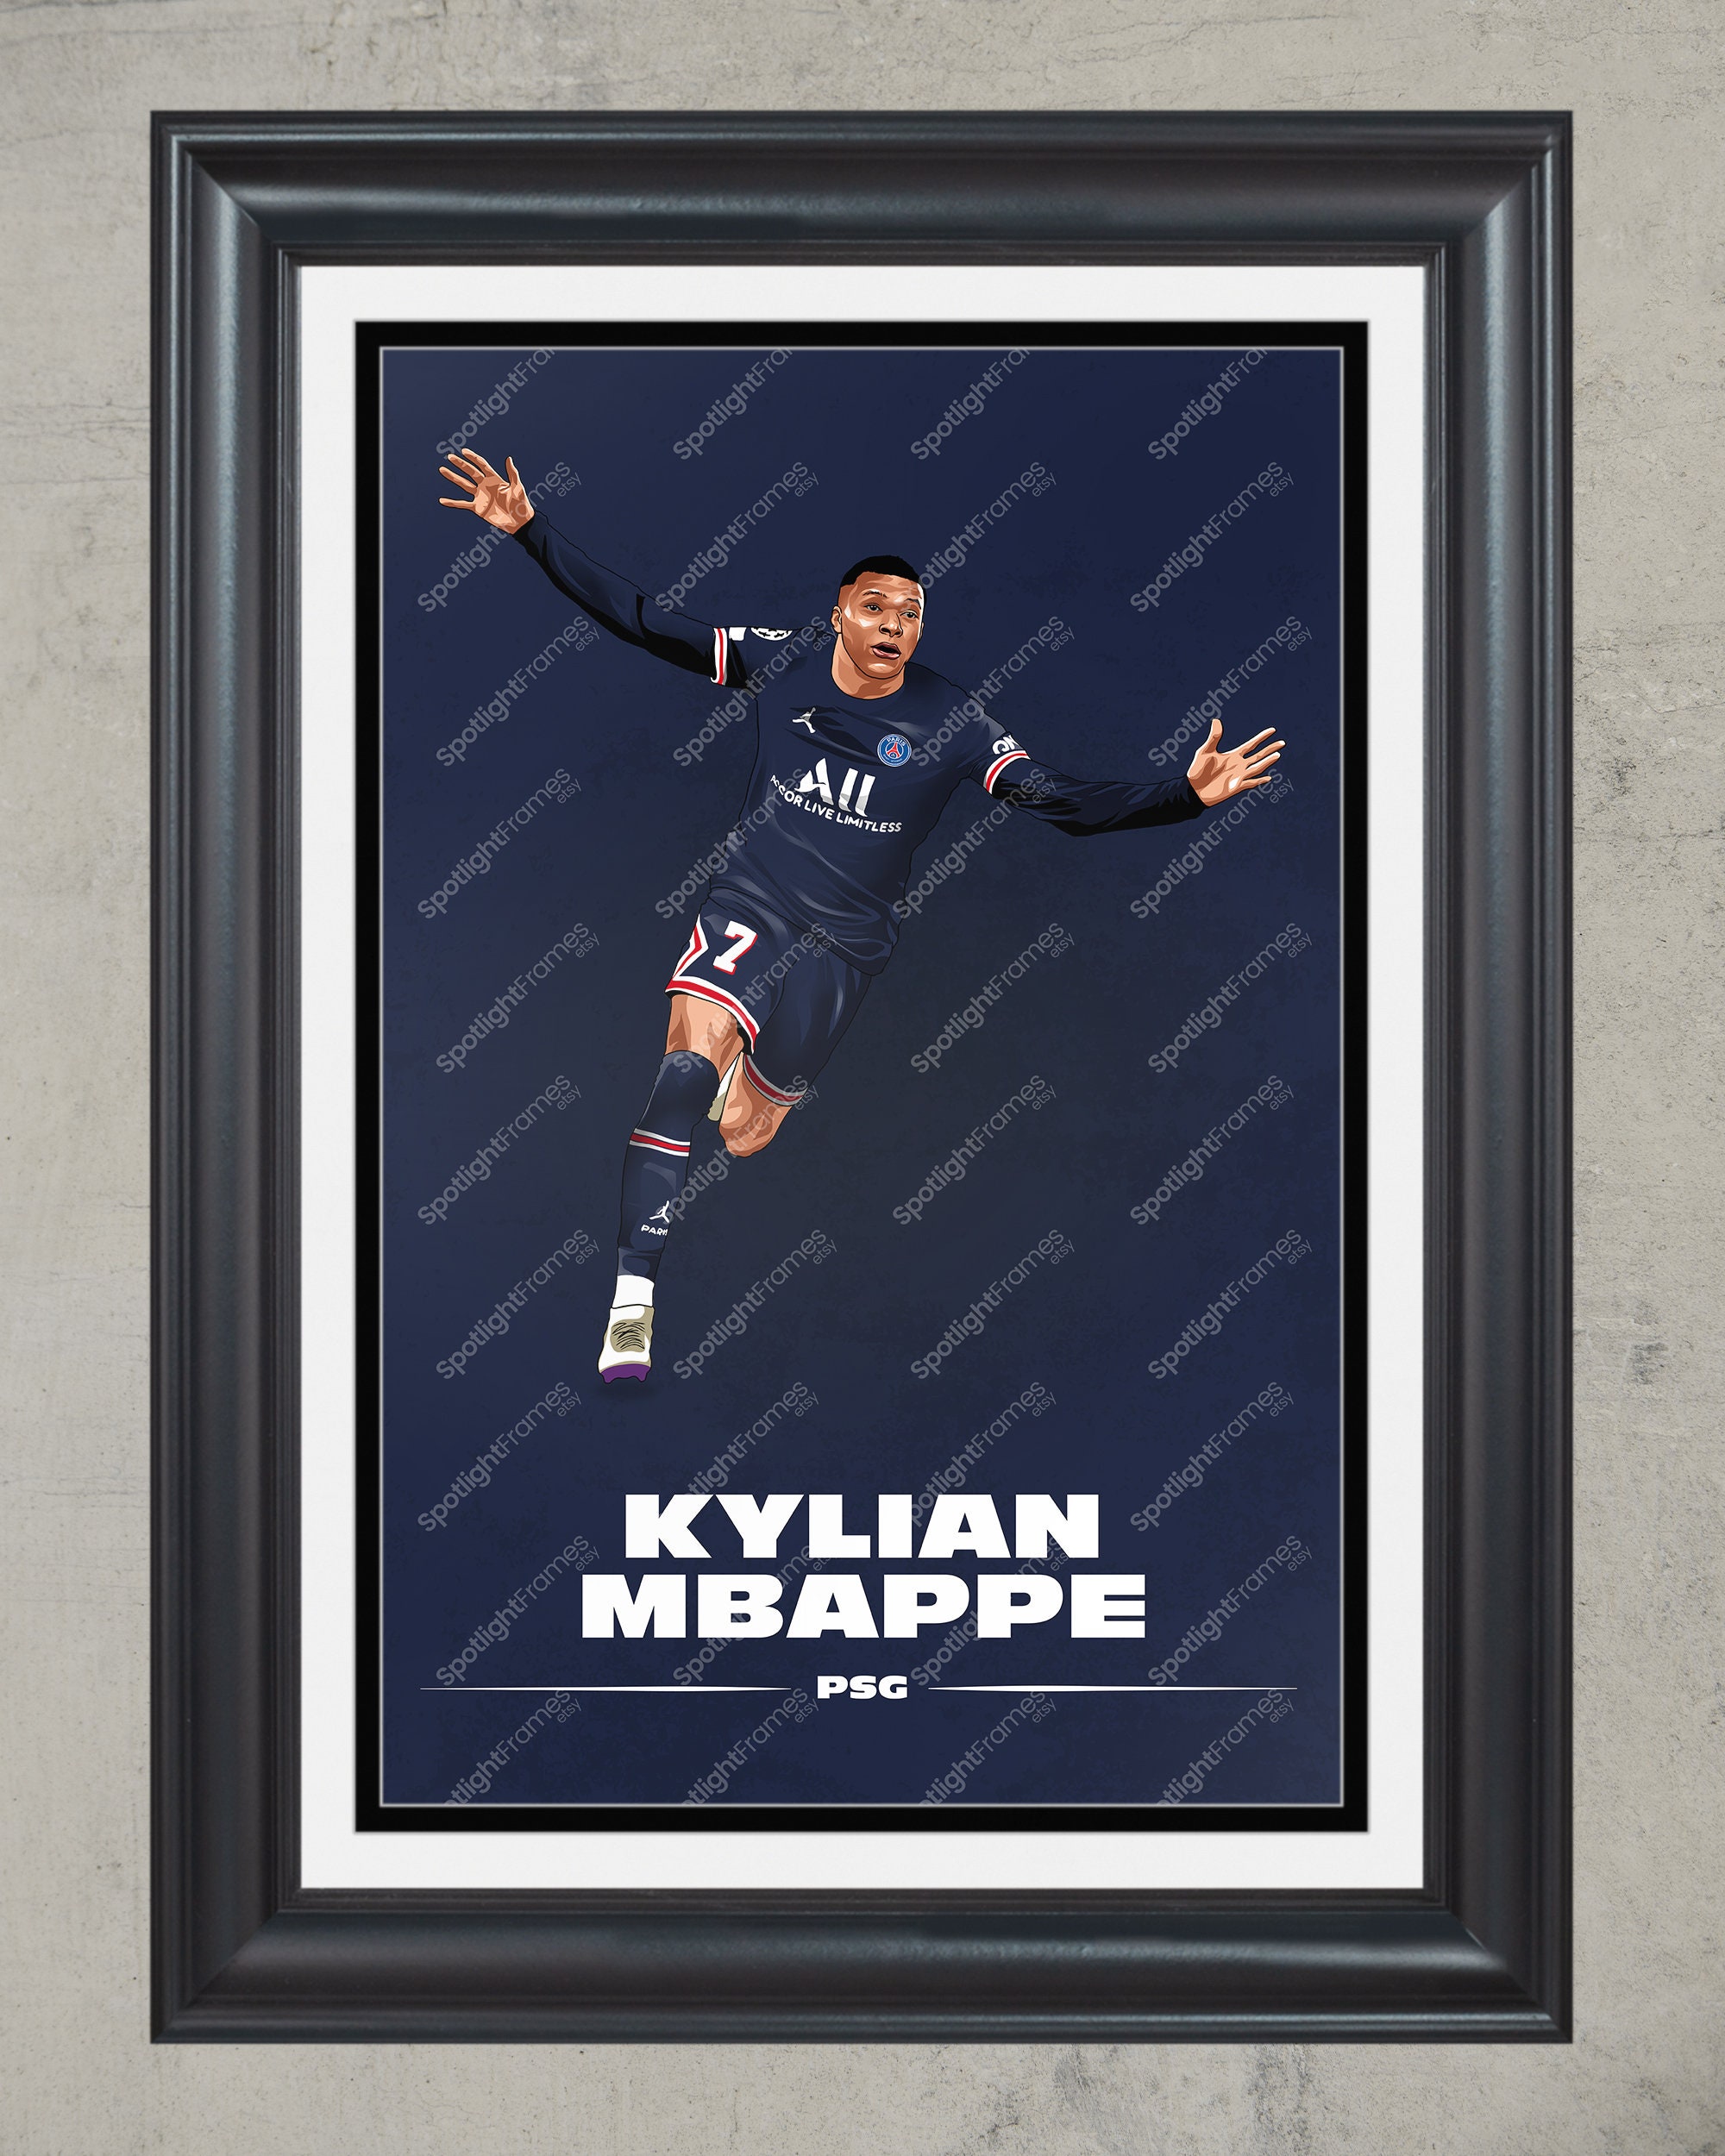 Affiche Kylian Mbappé | Impression PSG, Affiche Paris Saint-Germain,  Football Wa